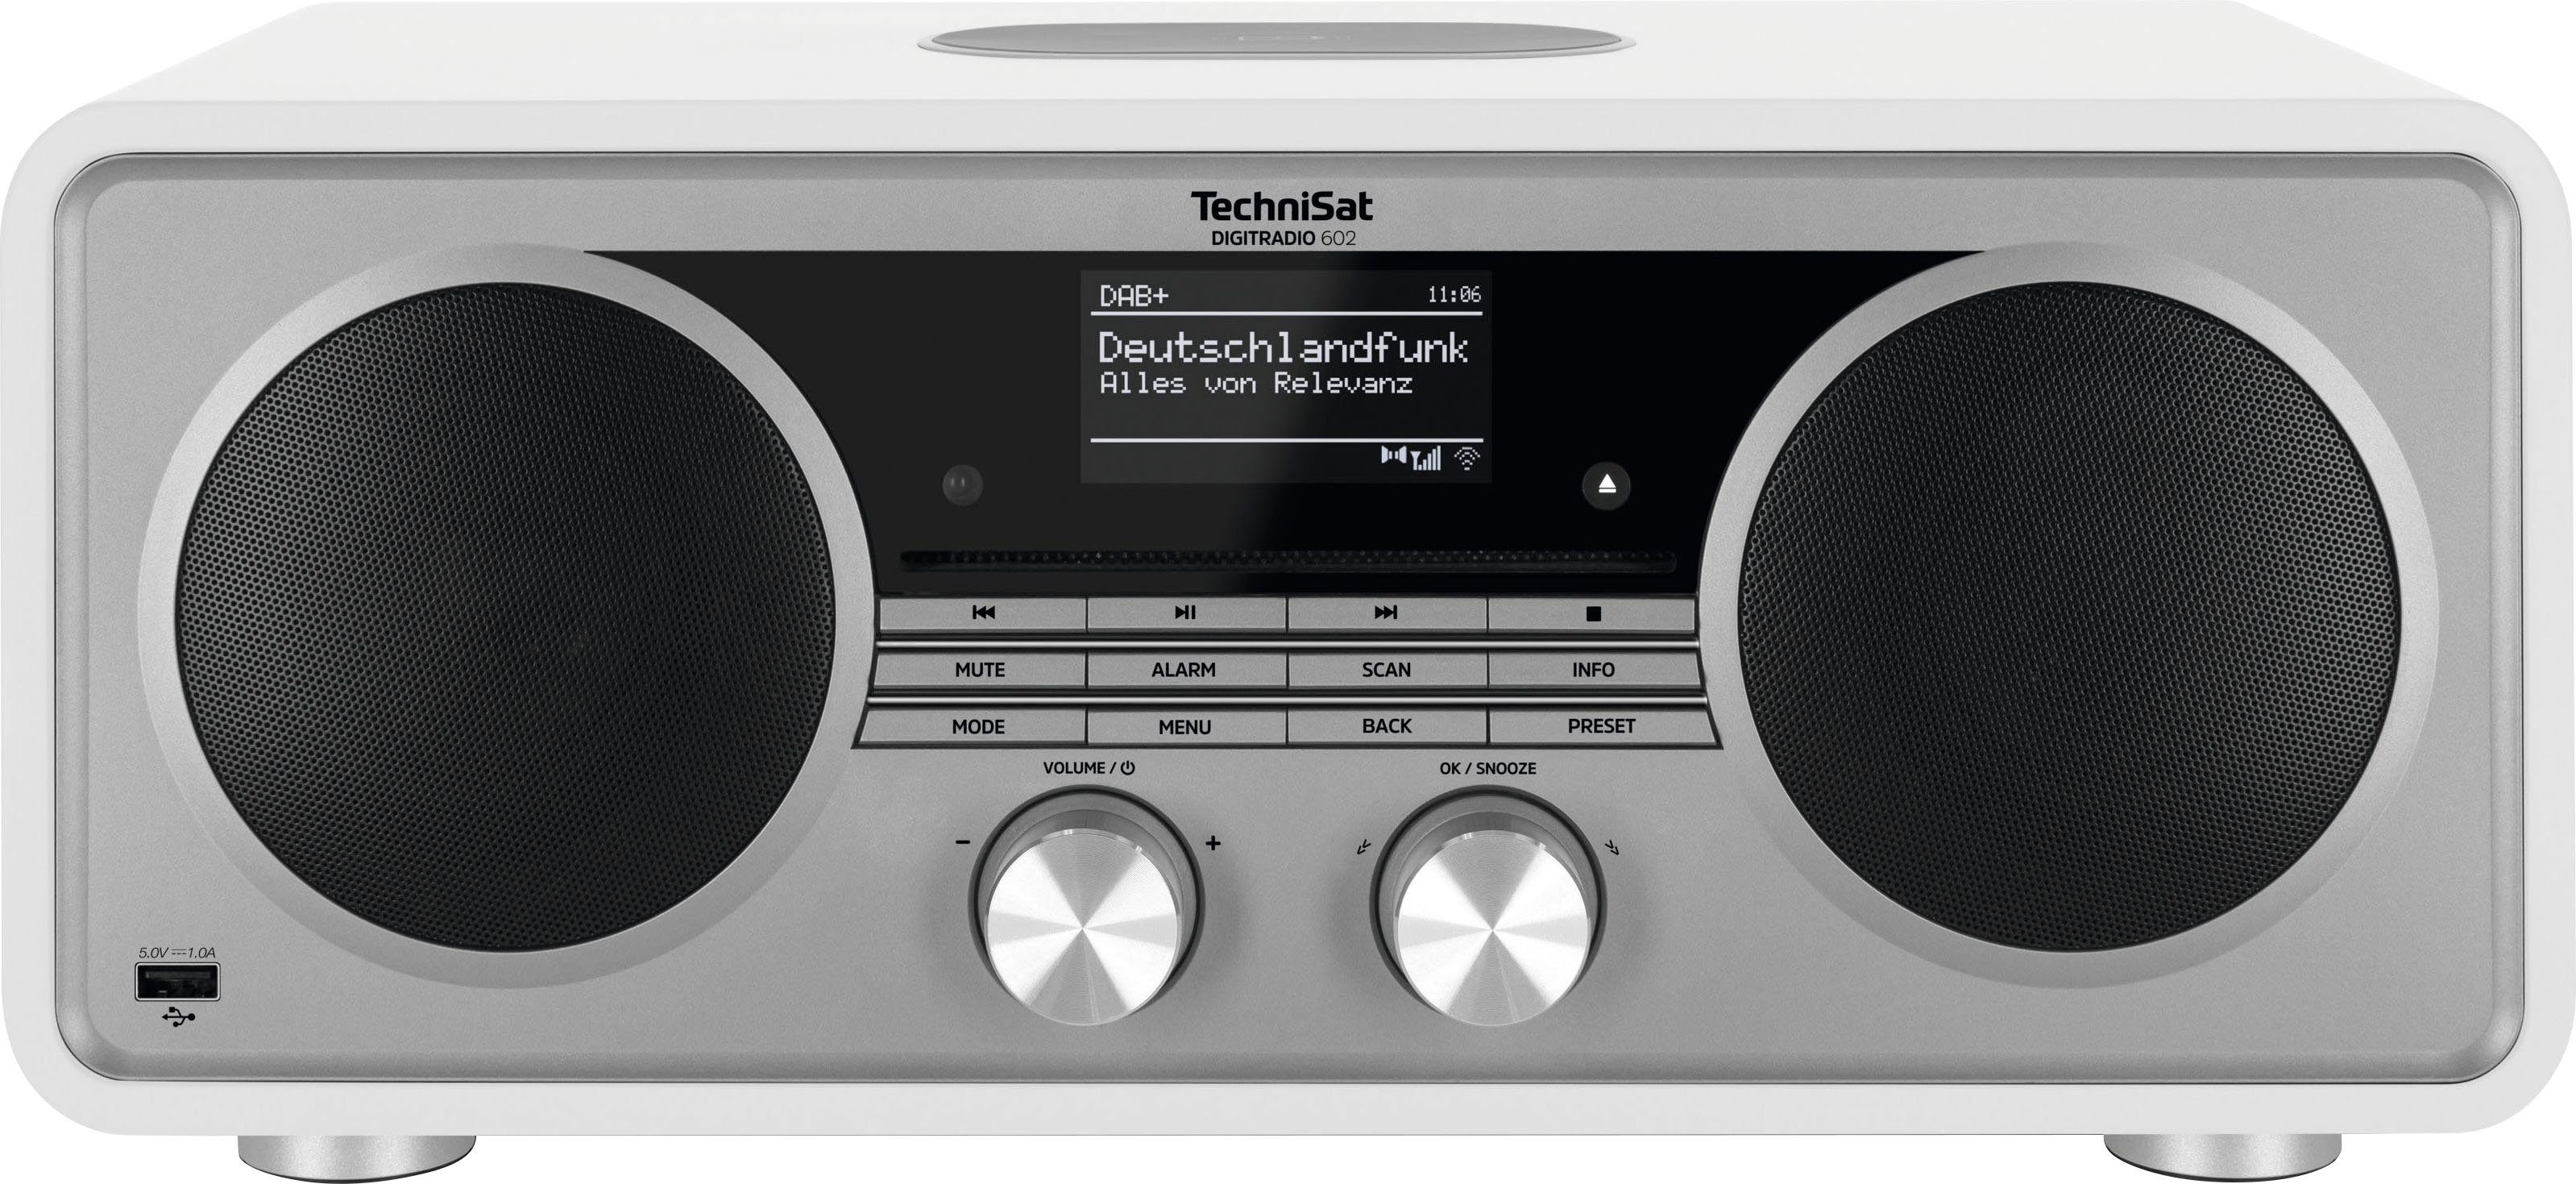 TechniSat DIGITRADIO 602 Internet-Radio 70 UKW CD-Player) (Digitalradio Stereoanlage, W, mit Weiß/Silber (DAB), RDS